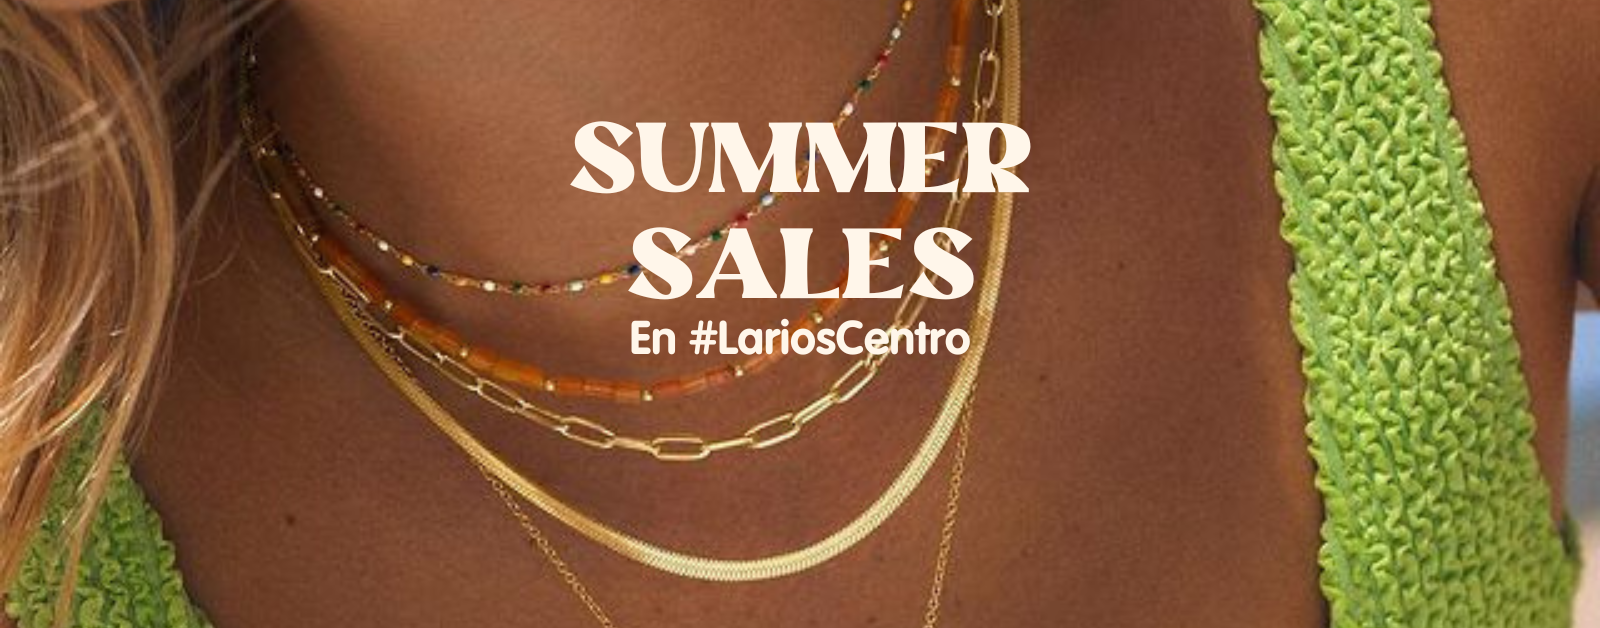 summer sales larios centro